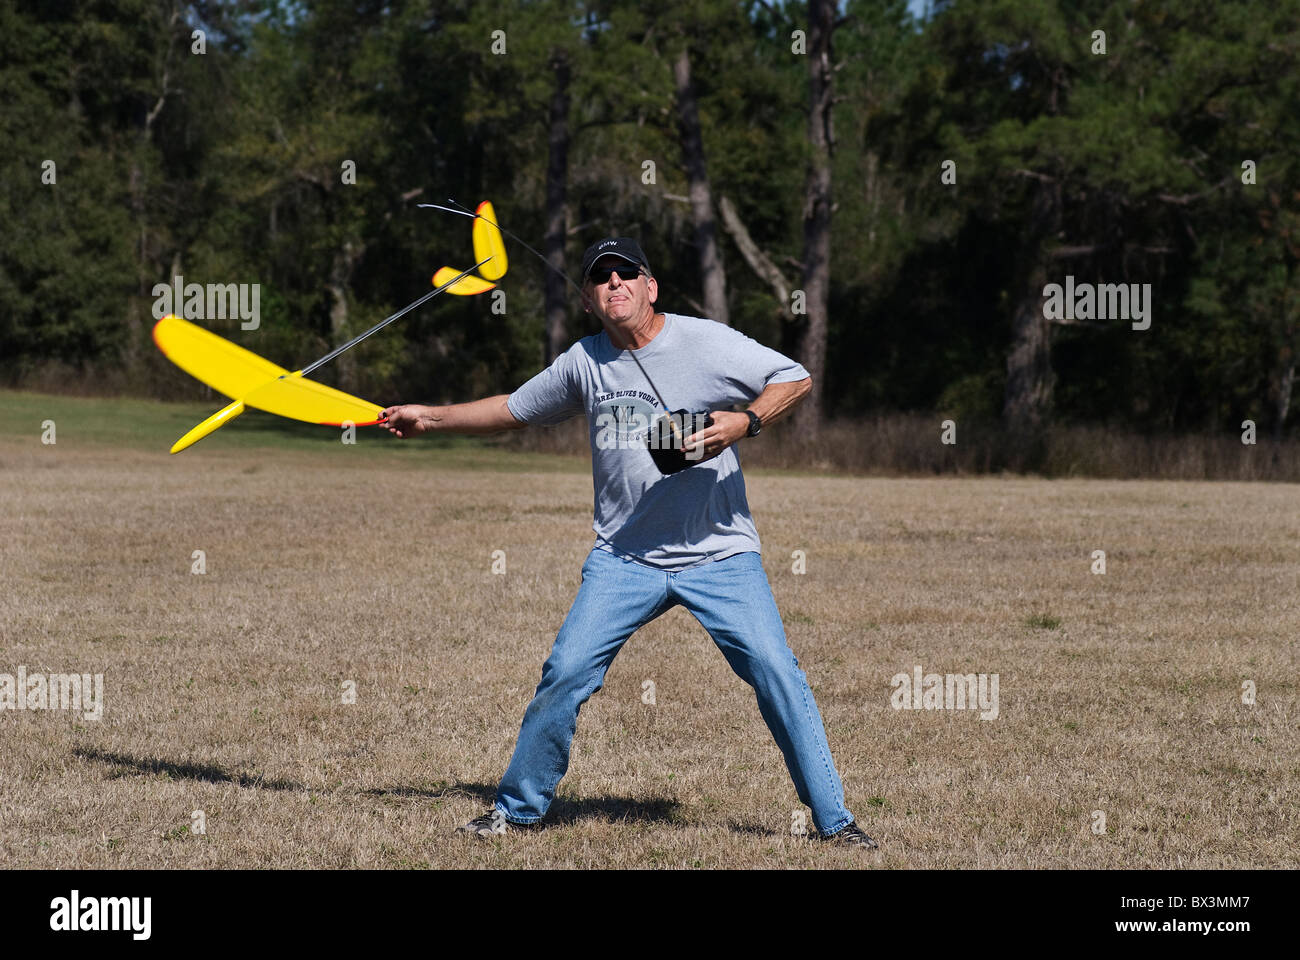 L'uomo lancia la sua radio controlled glider durante il lancio a mano glider concorrenza, Alachua, Florida. Foto Stock